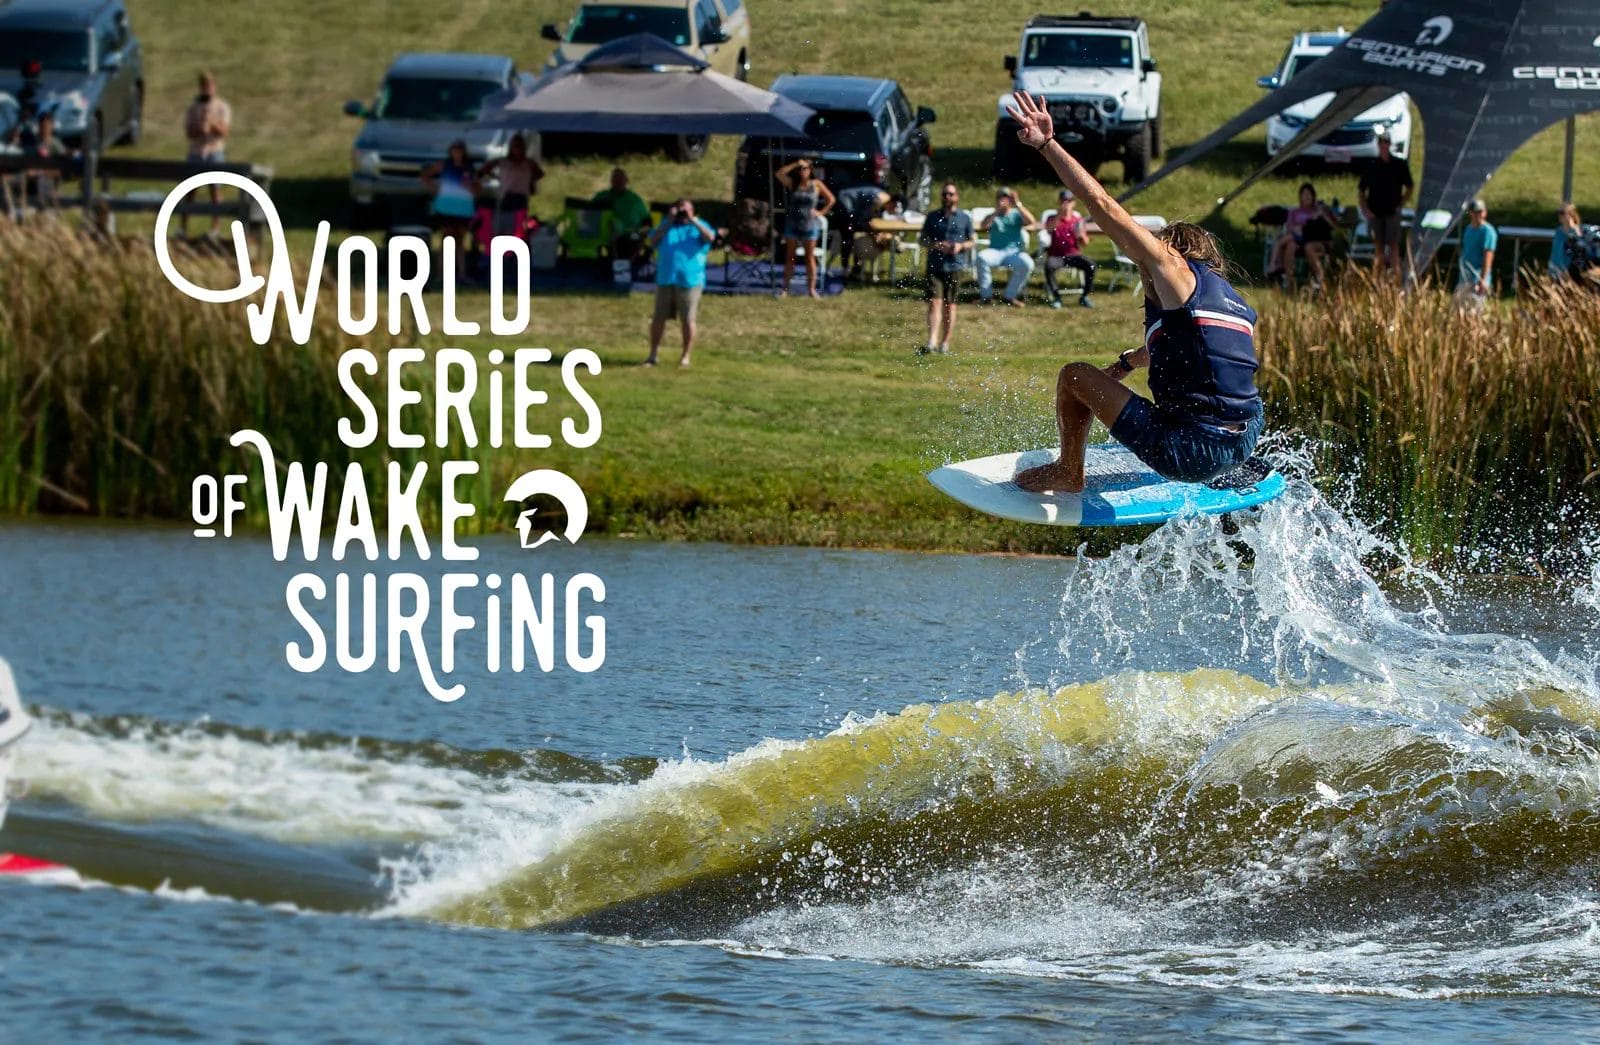 World series of wakesurfing, showcasing the best wakeboat and wakesurf board skills.